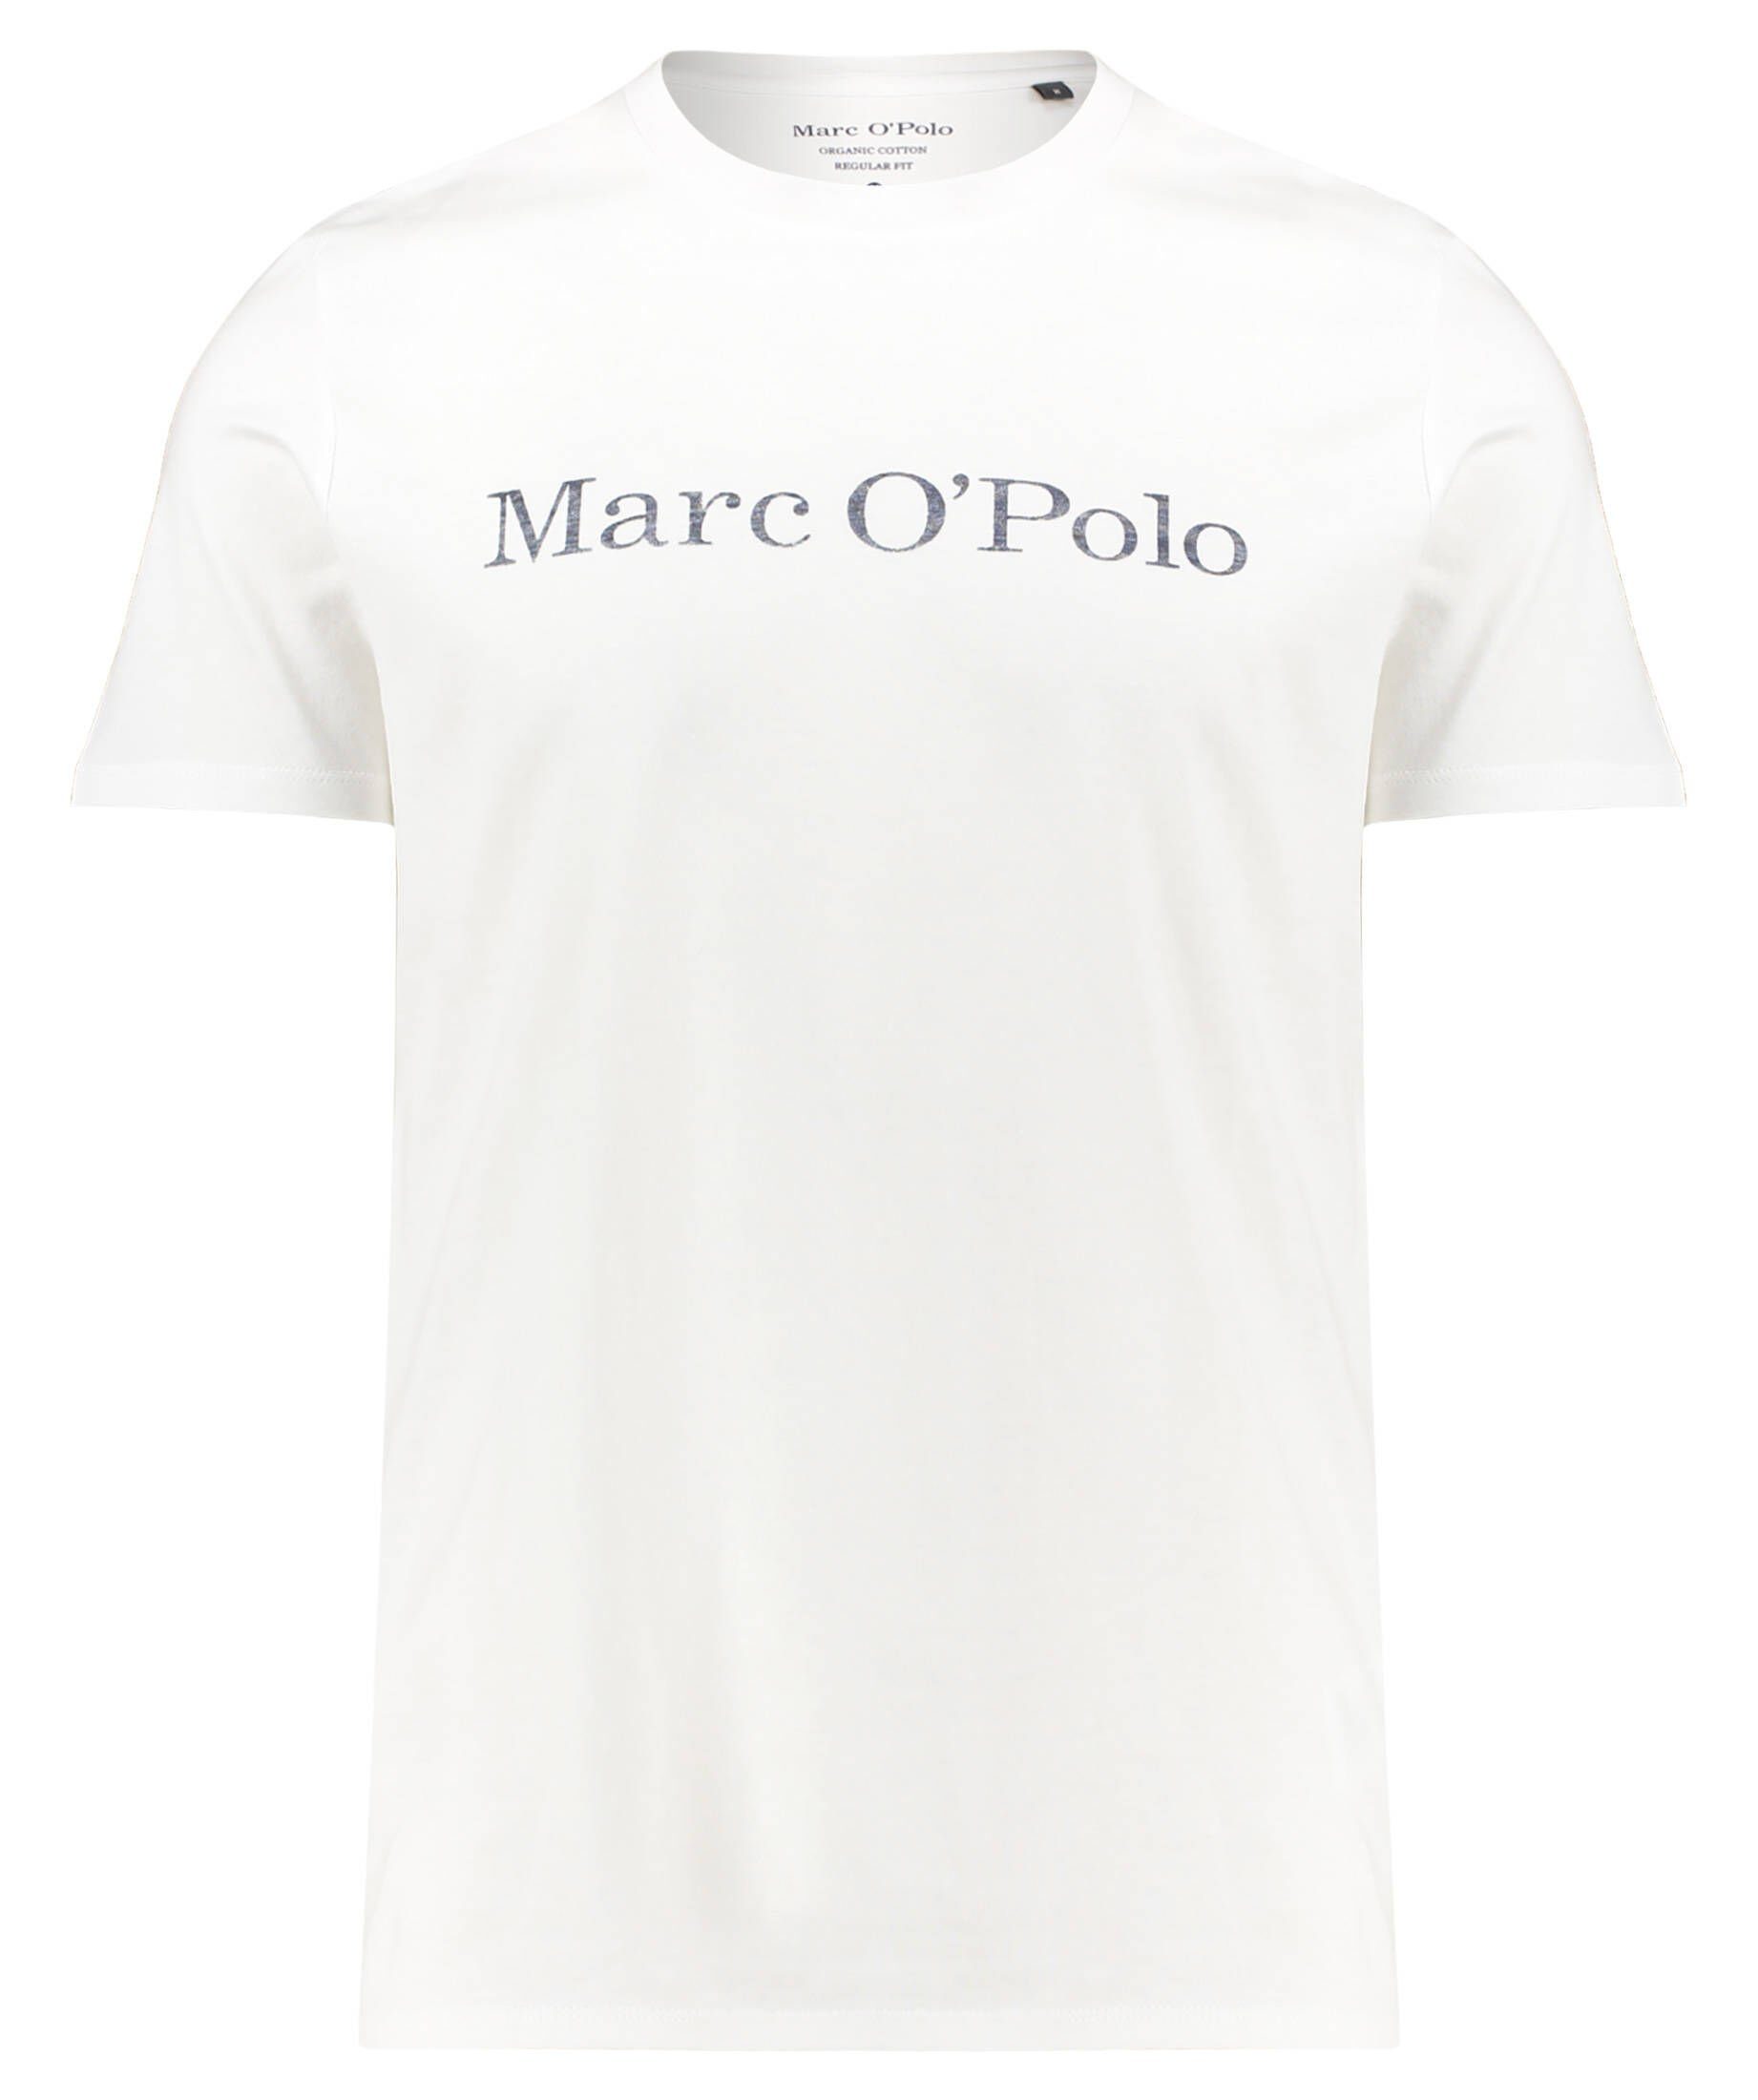 Marc O'Polo Herrenmode online kaufen | OTTO